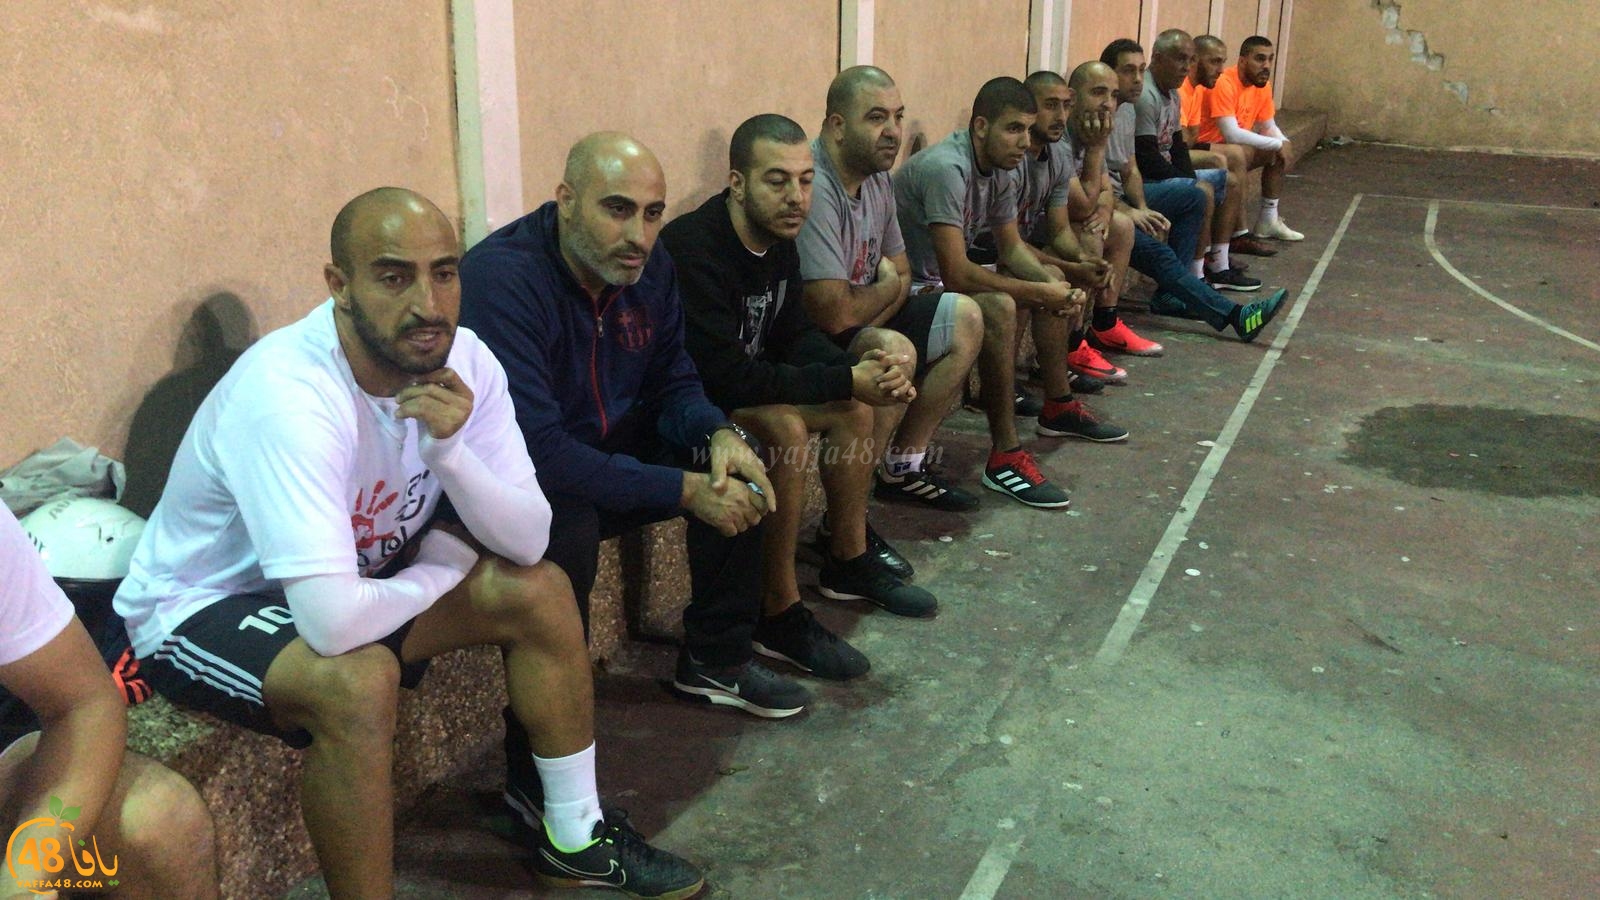 بالفيديو: النادي الإسلامي يُنظم دوري مصغّر لكرة القدم بعنوان يافا ضد العنف